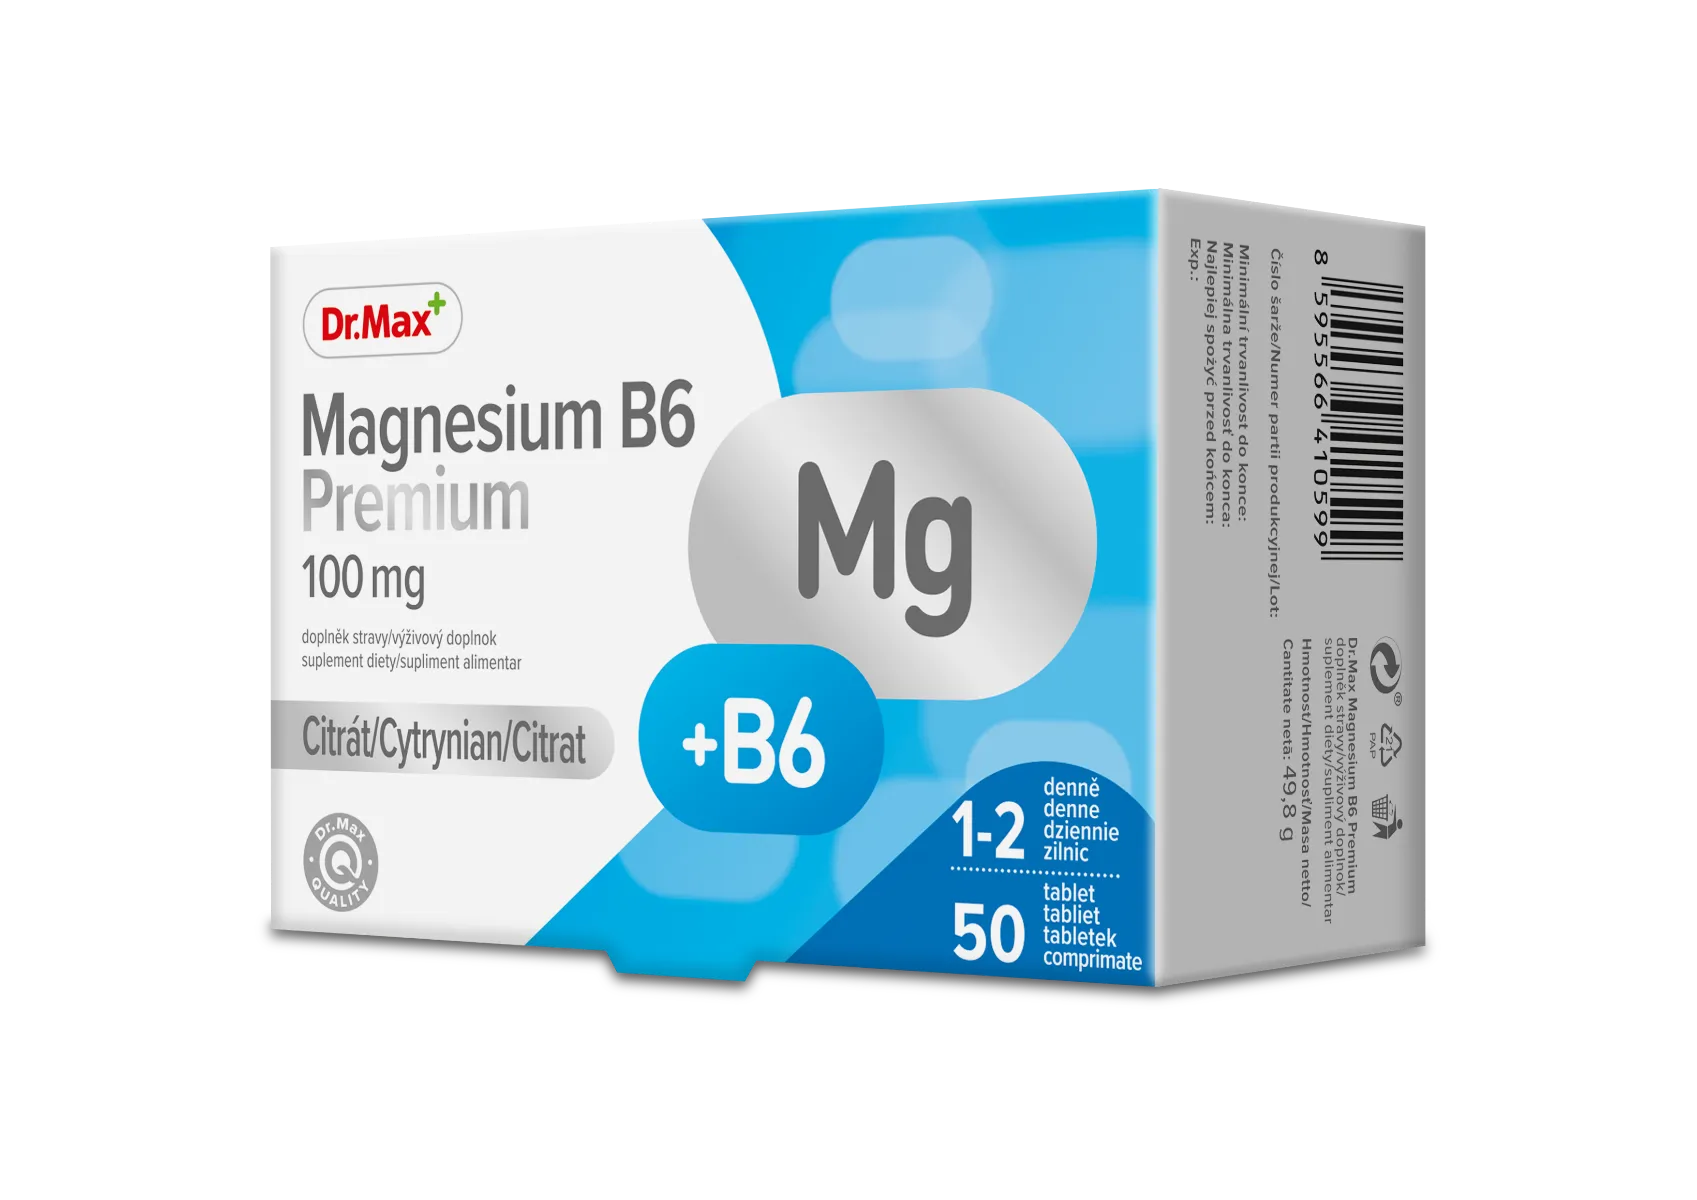 Dr.Max Magnesium B6 Premium, 50 comprimate